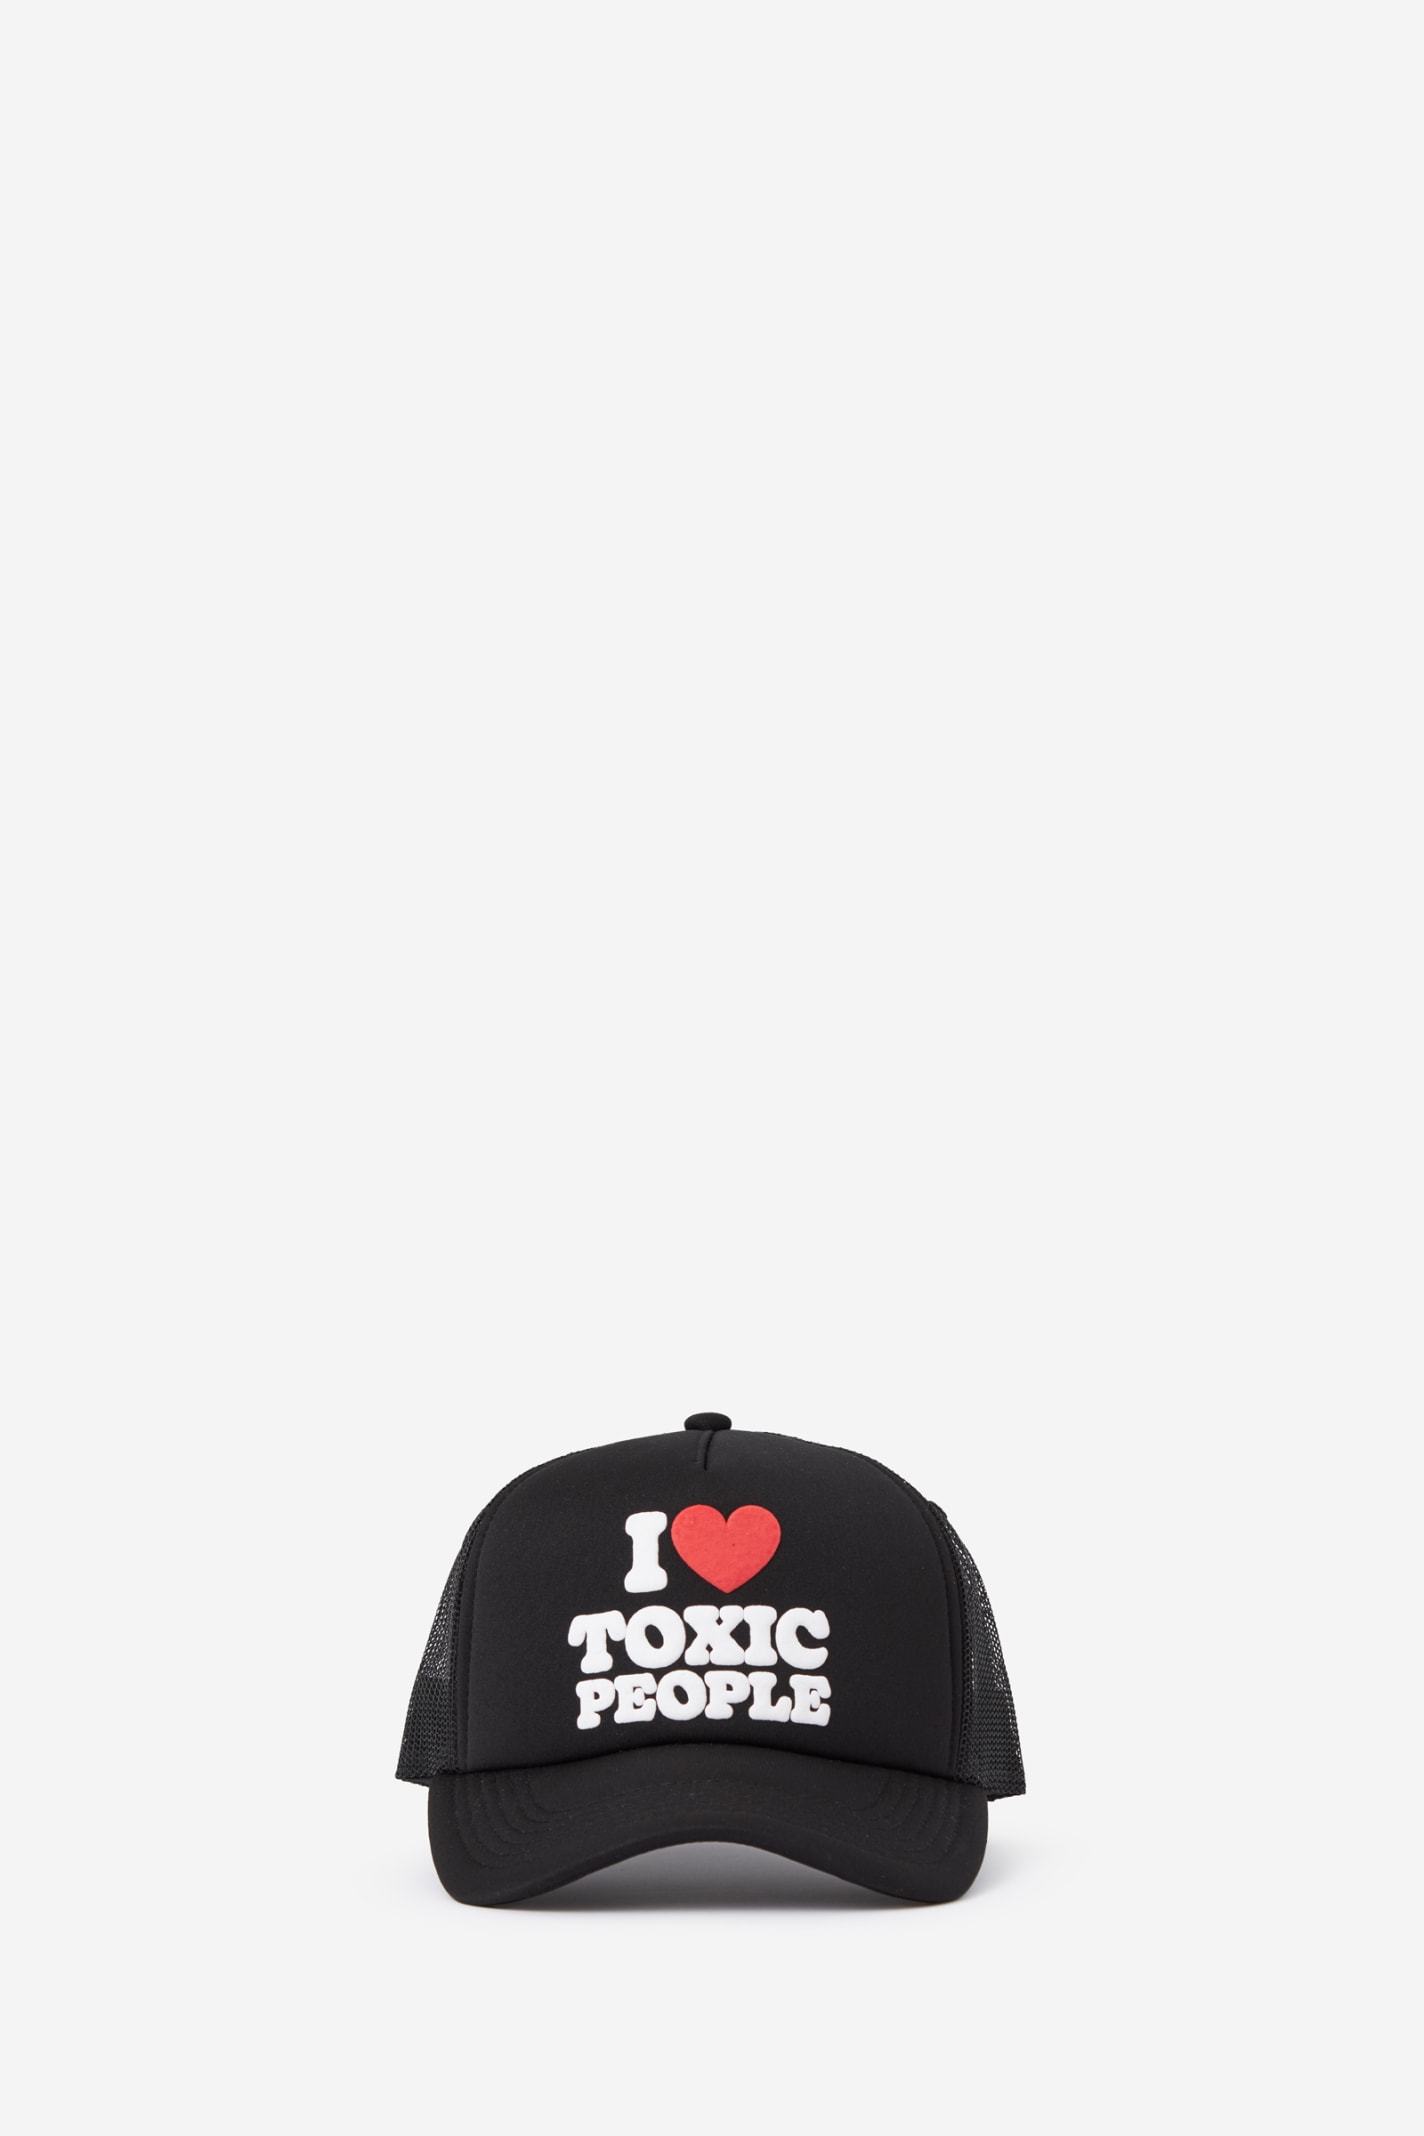 Toxic Trucker Hats